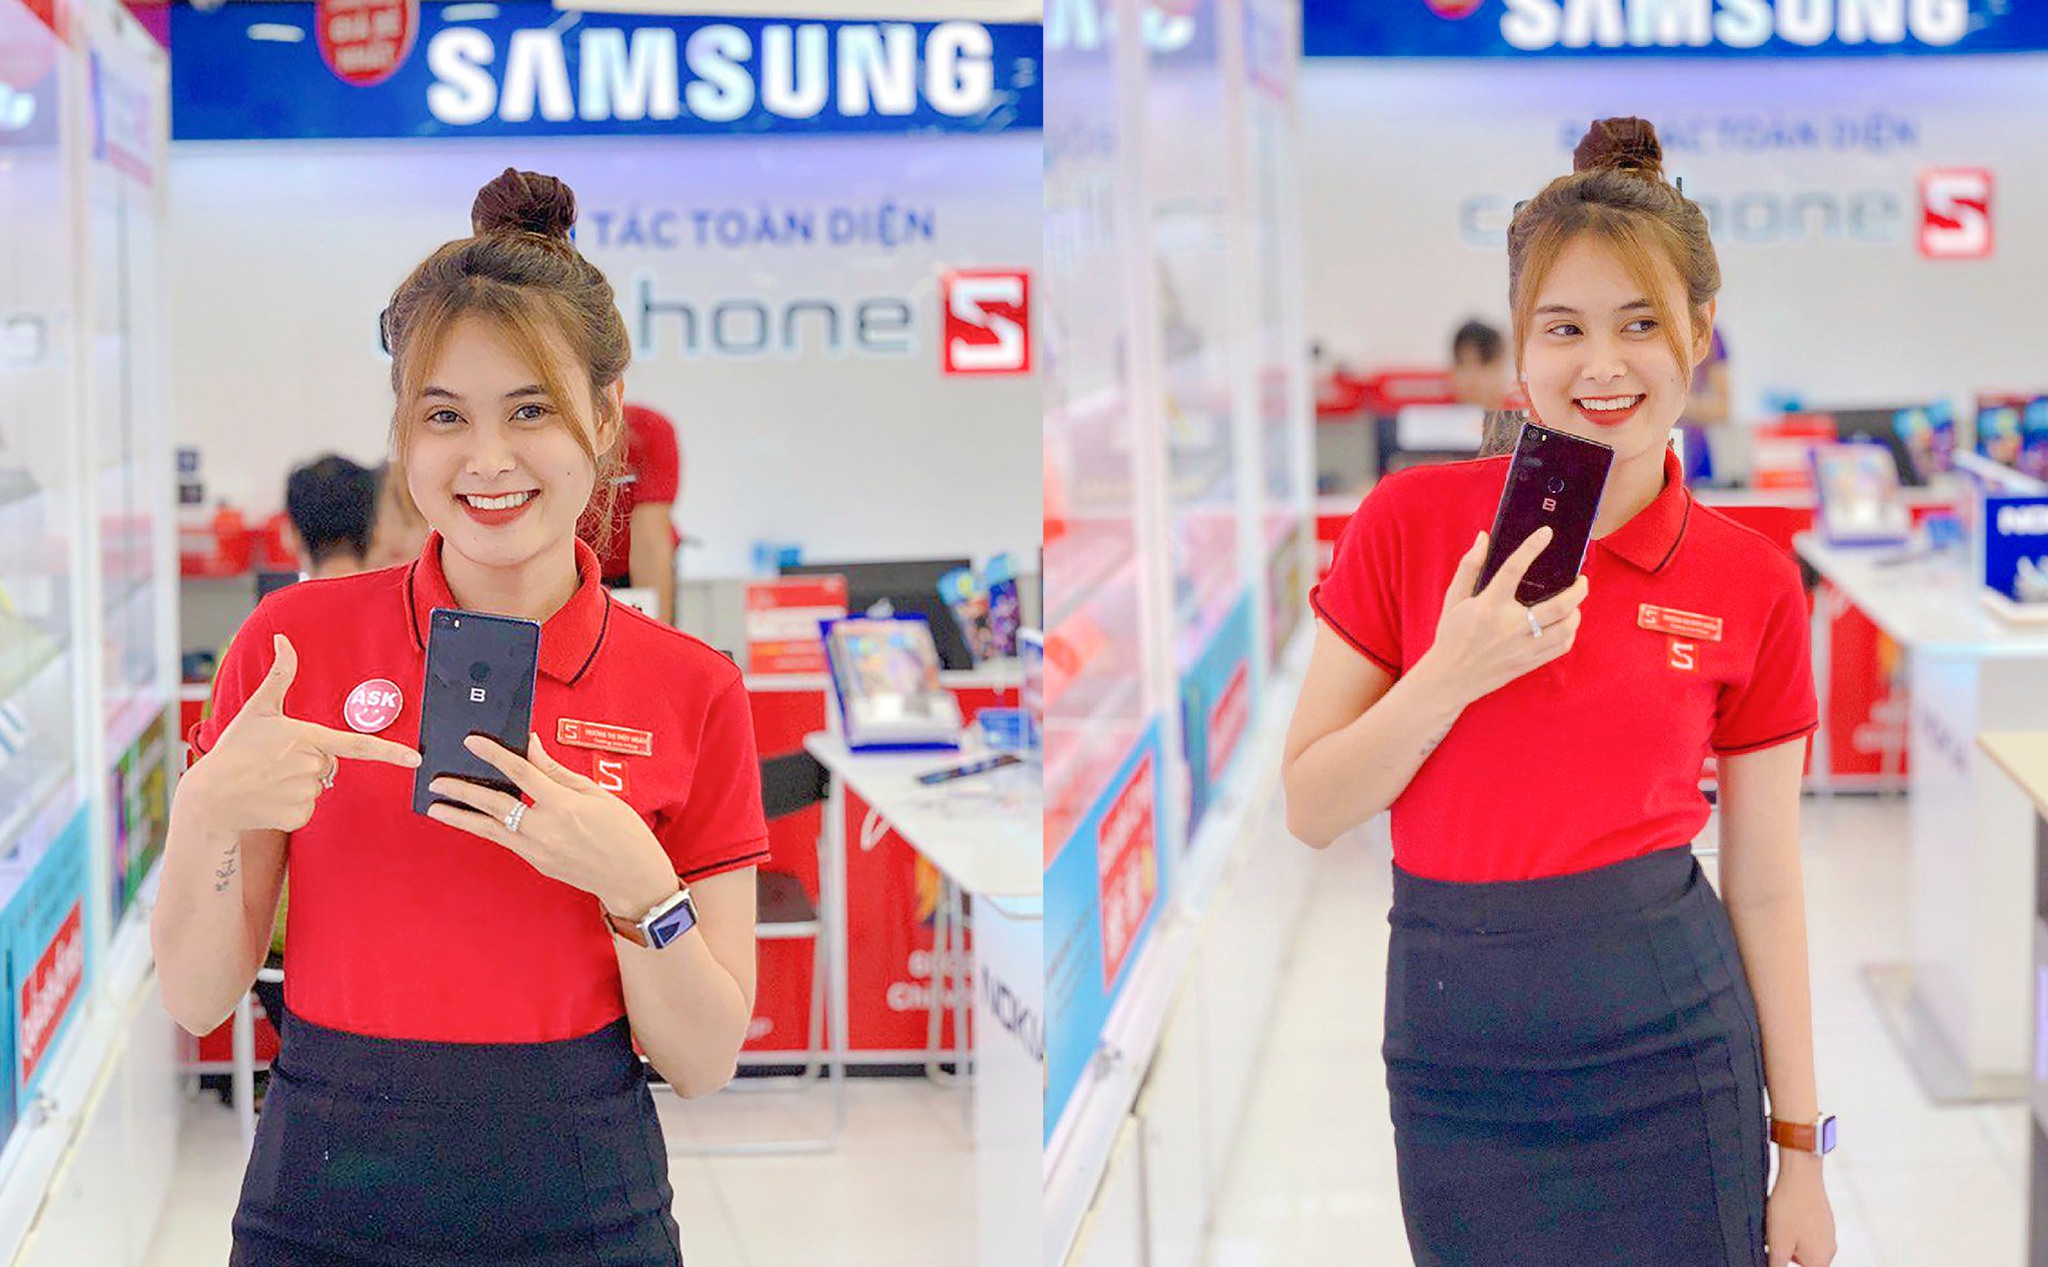 [QC] Bphone 3 bán mở bán tại CellphoneS: Cơ hội tốt để sản phẩm Việt tiếp cận người dùng?